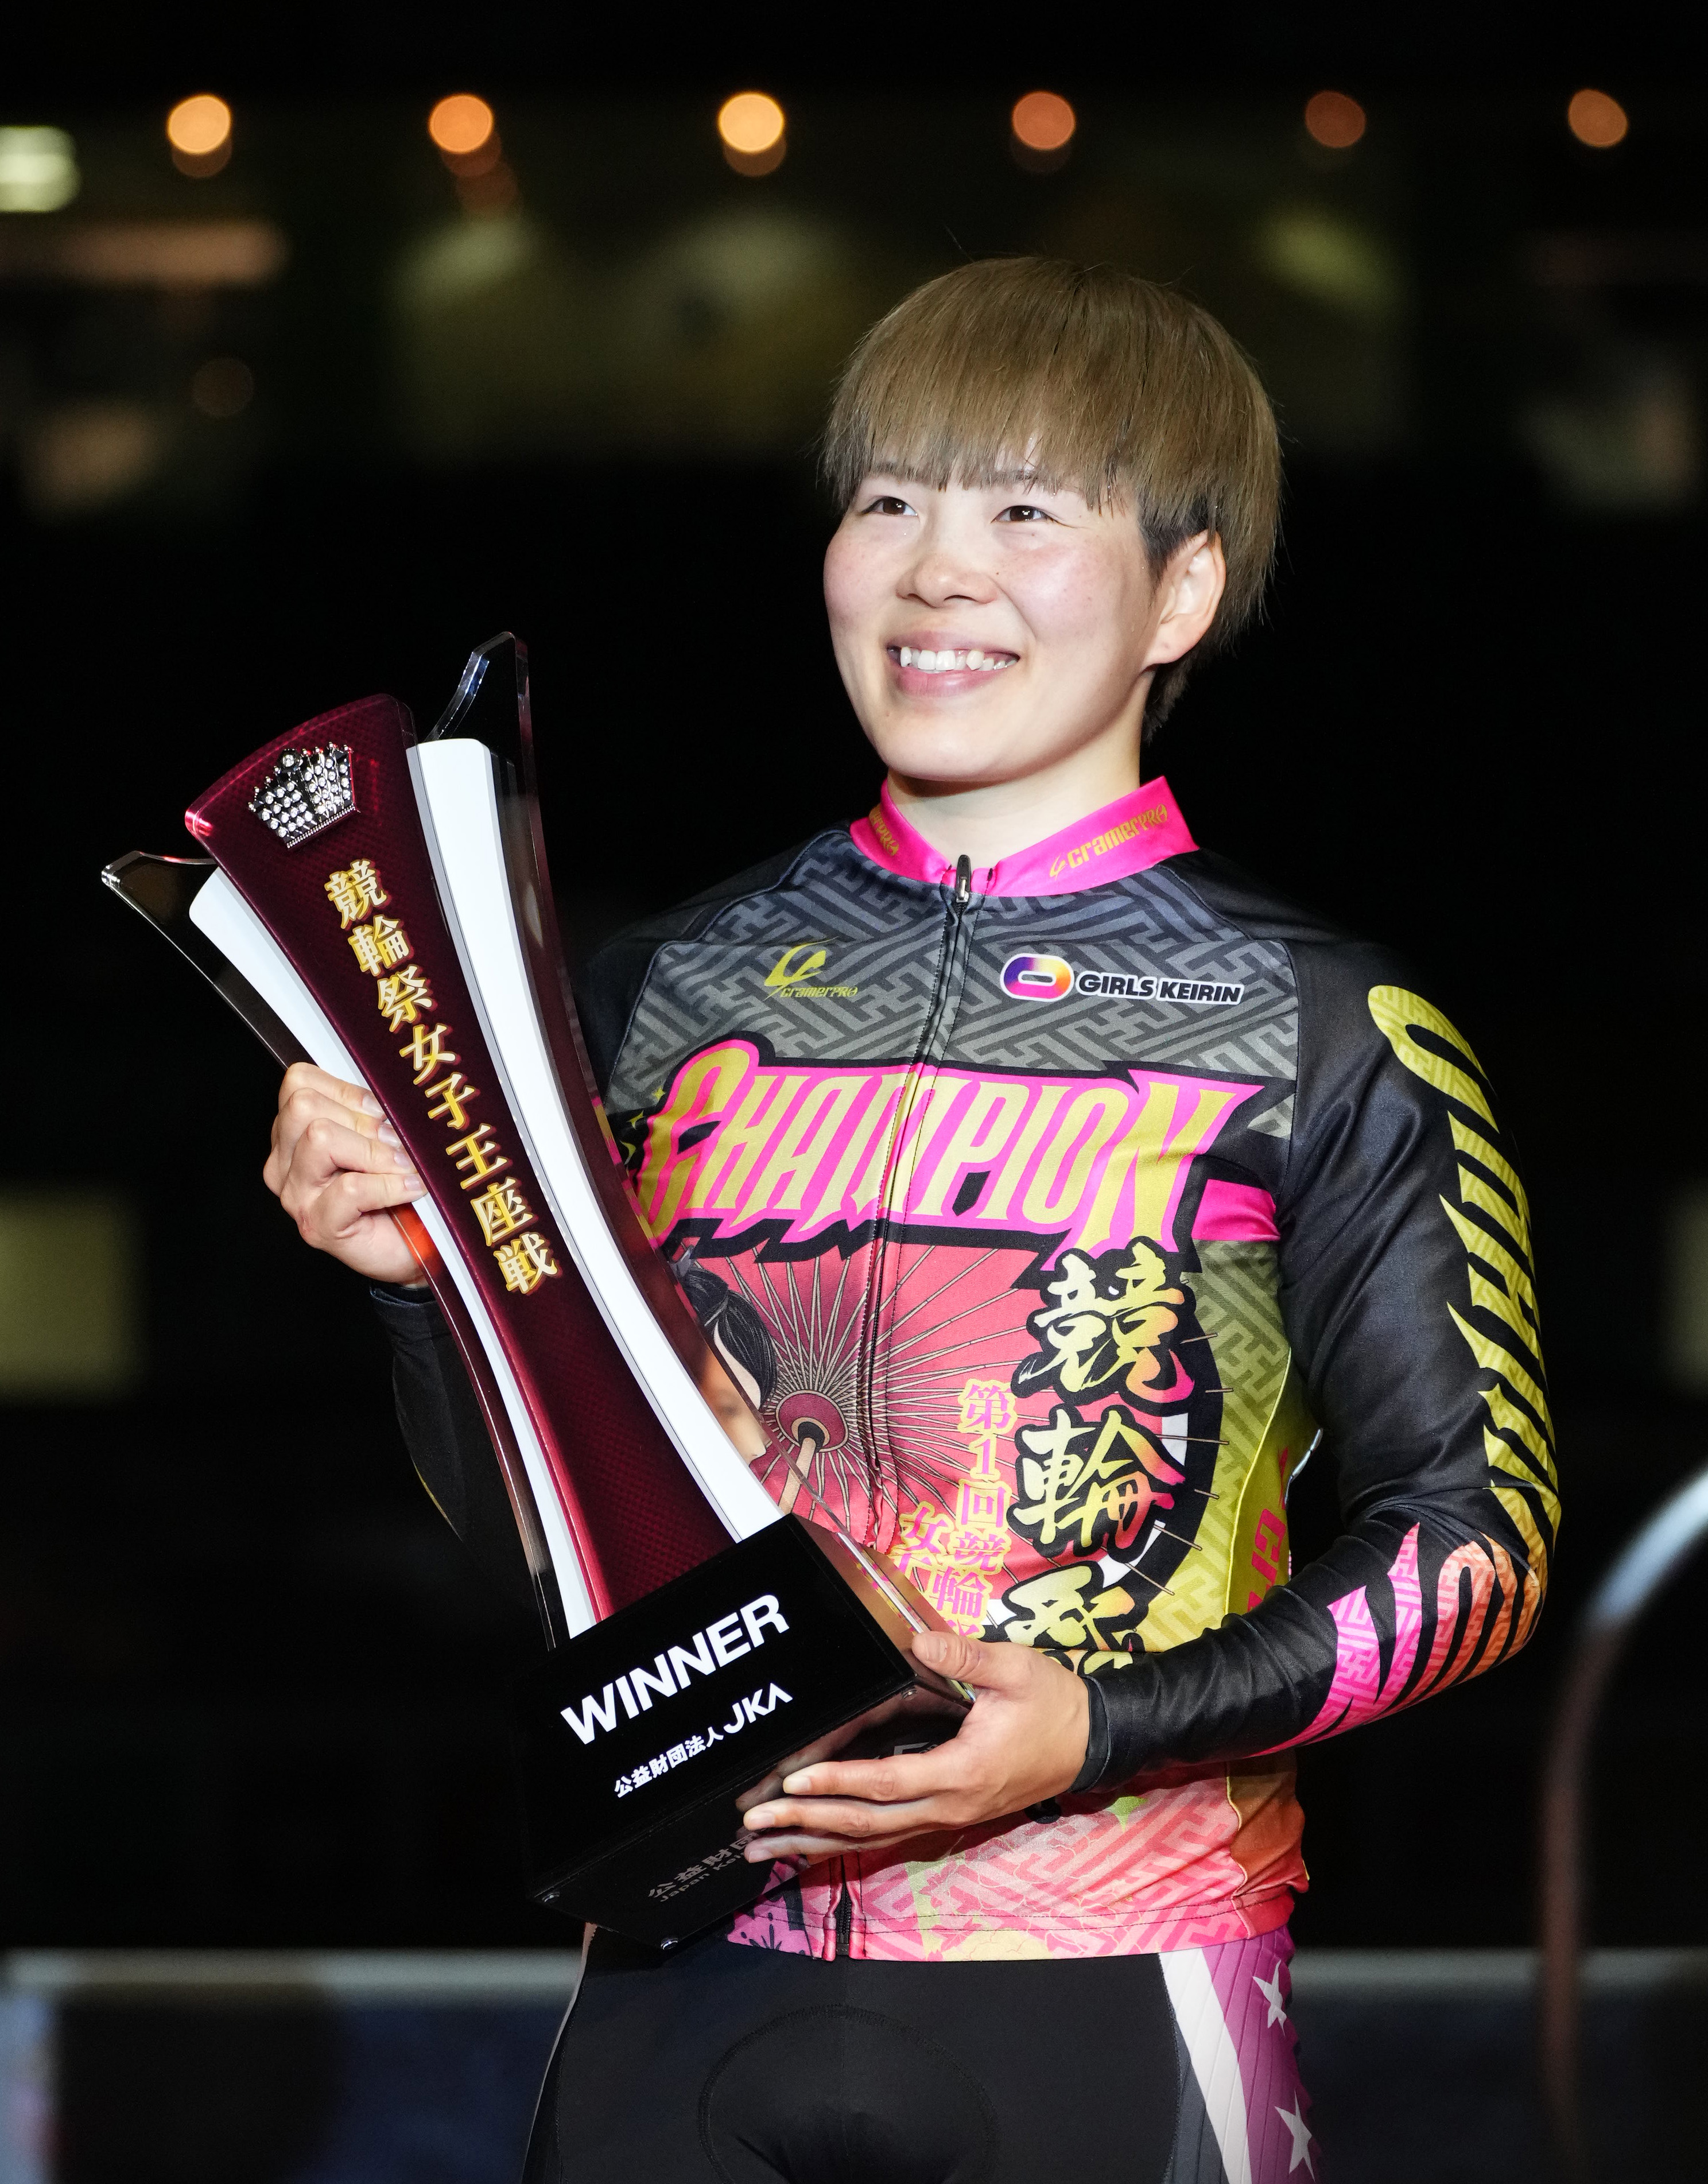 第一回競輪祭女子王座戦G1サイン入りチャンピオンジャージ 梅川風子 